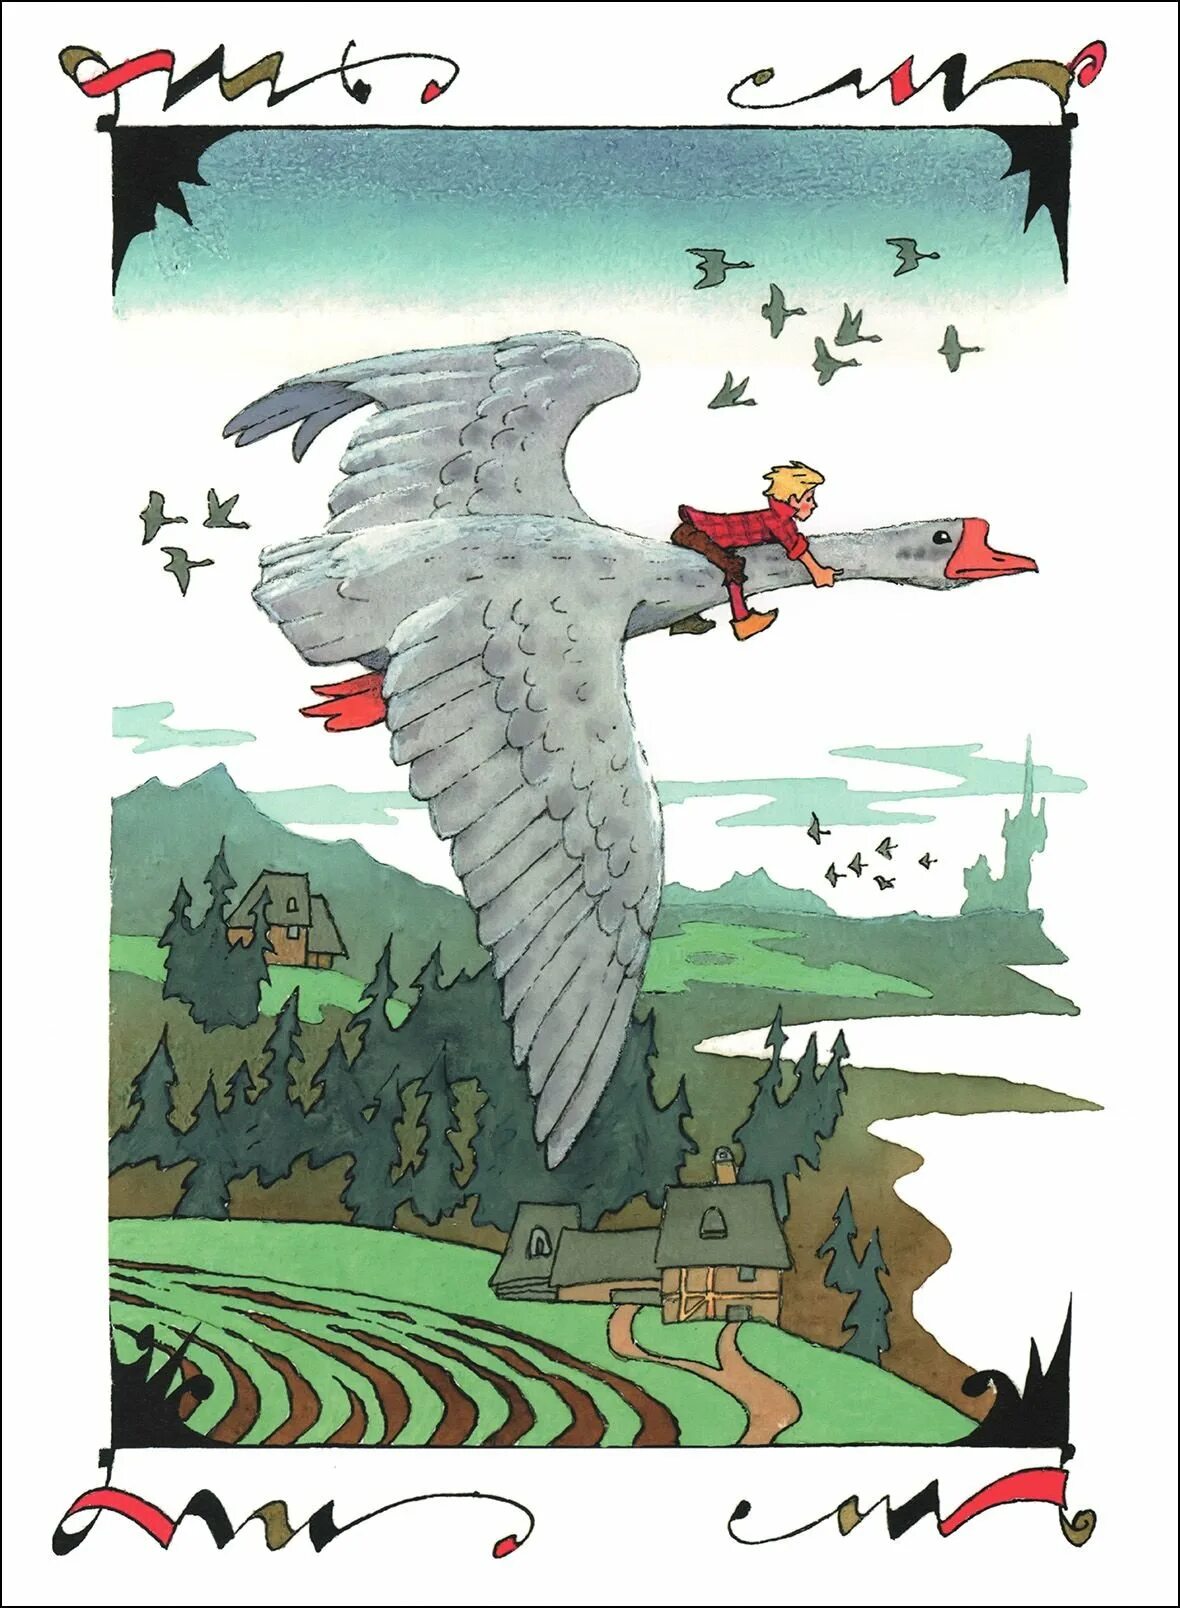 Иллюстрации Лагерлеф сказочное путешествие Нильса с дикими гусями. С.лагерлёф чудесное путешествие Нильса с дикими гусями иллюстрации. Удивительное путешествие нильса с дикими гусями